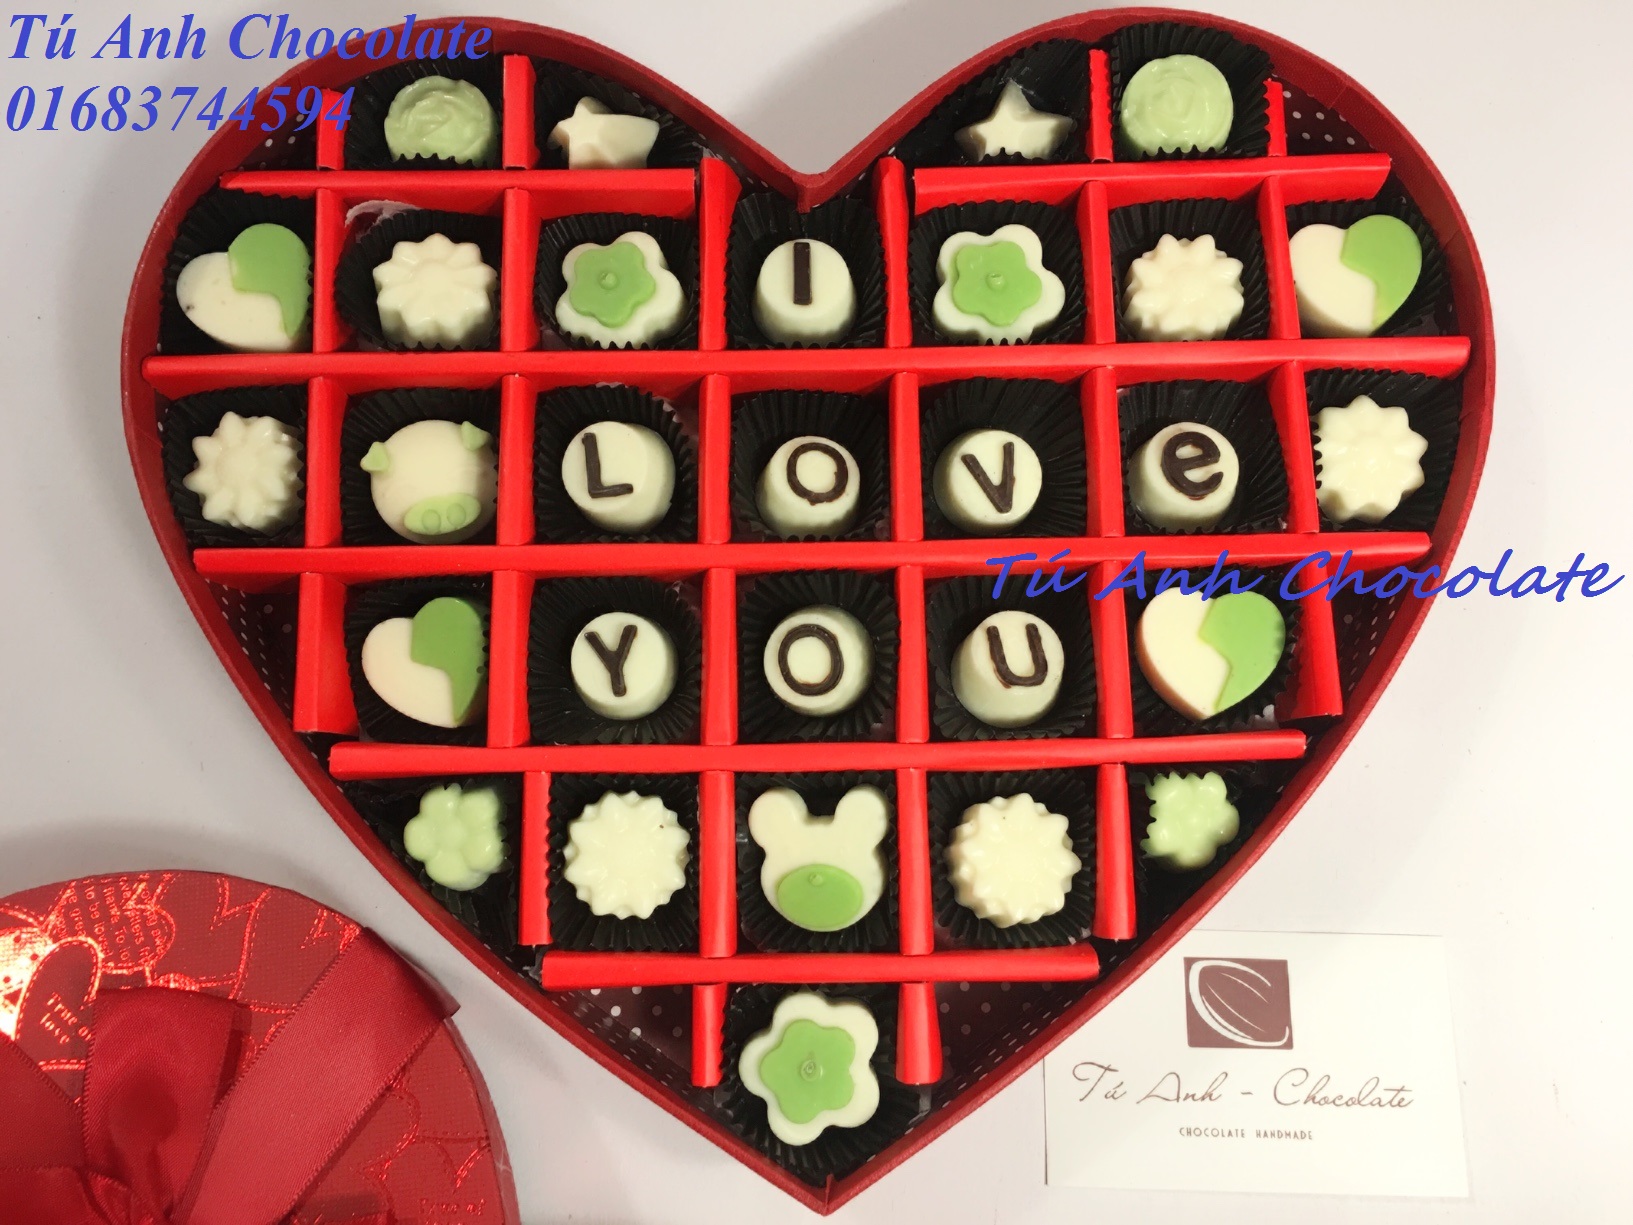 Hình ảnh mẫu socola valentine: Làm sao để chinh phục trái tim người ấy trong Ngày valentine? Hãy xem những mẫu socola valentine hấp dẫn và sáng tạo nhất để có thể chọn cho mình món quà hoàn hảo. Những hình ảnh đầy sức hút này sẽ khiến bạn nhanh chóng đưa ra quyết định.